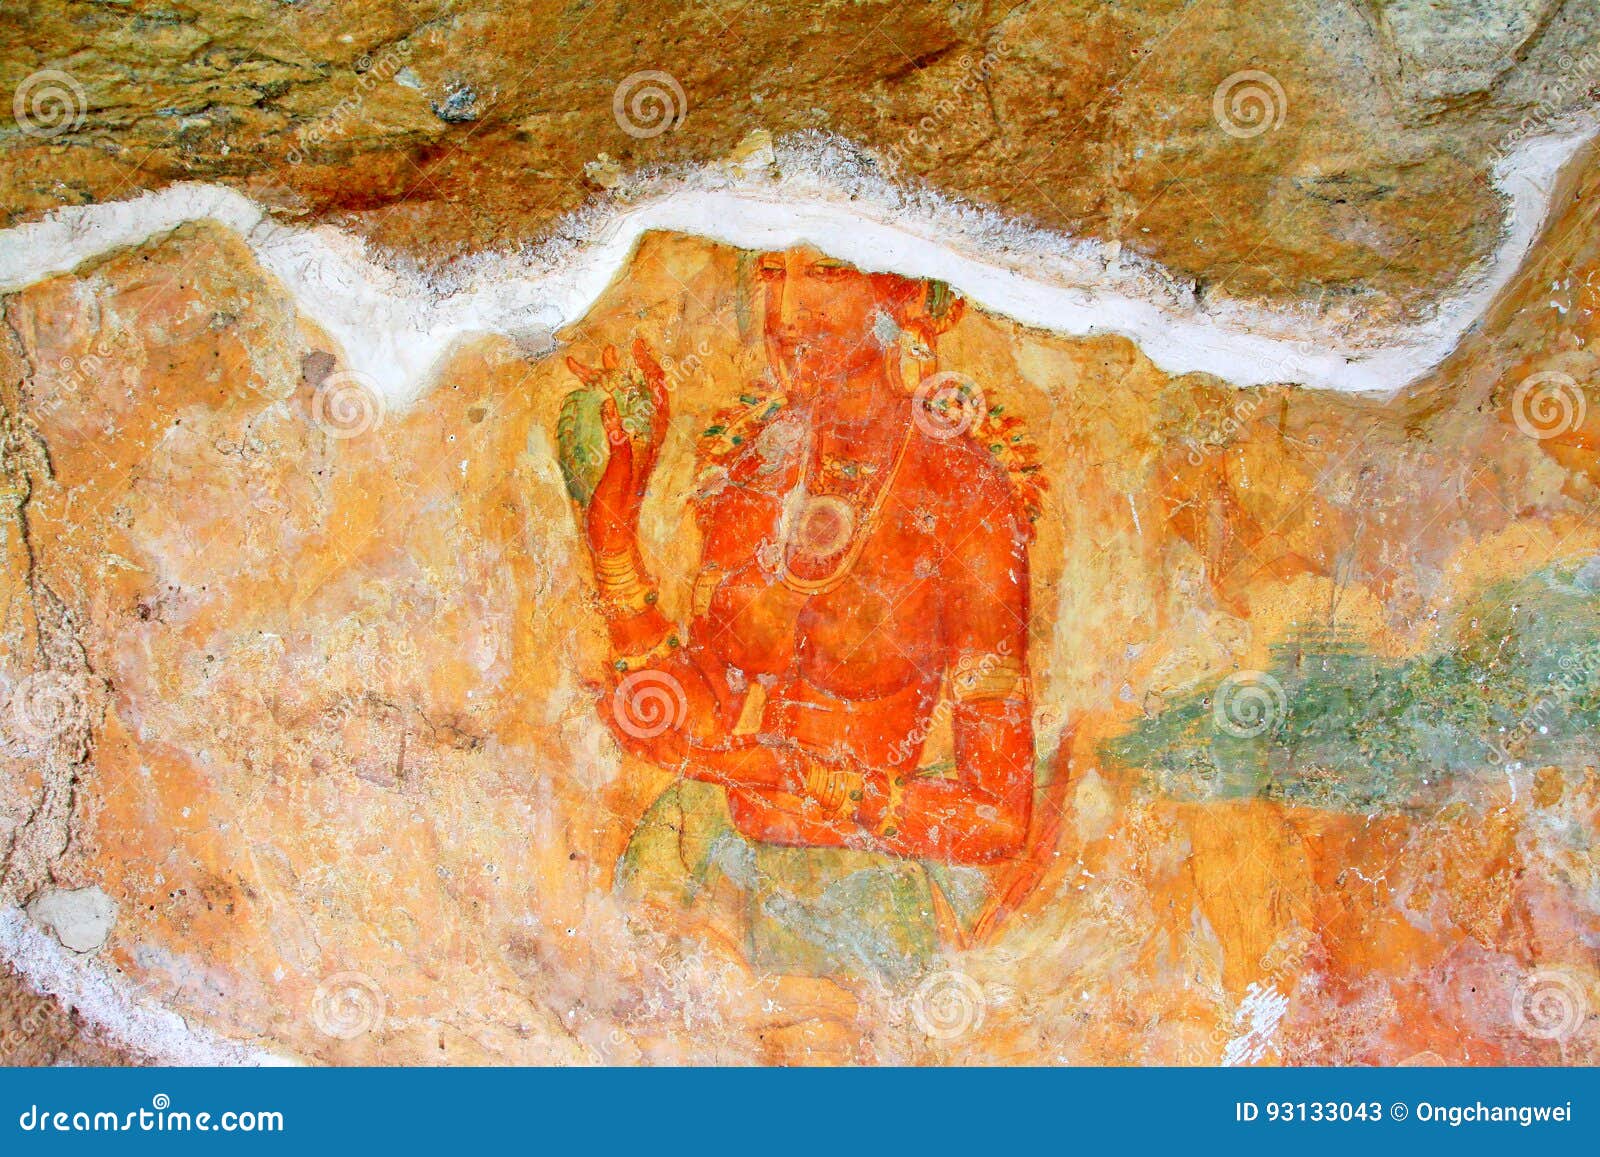 Sigiriya Sri Lanka Frescoes Welcome